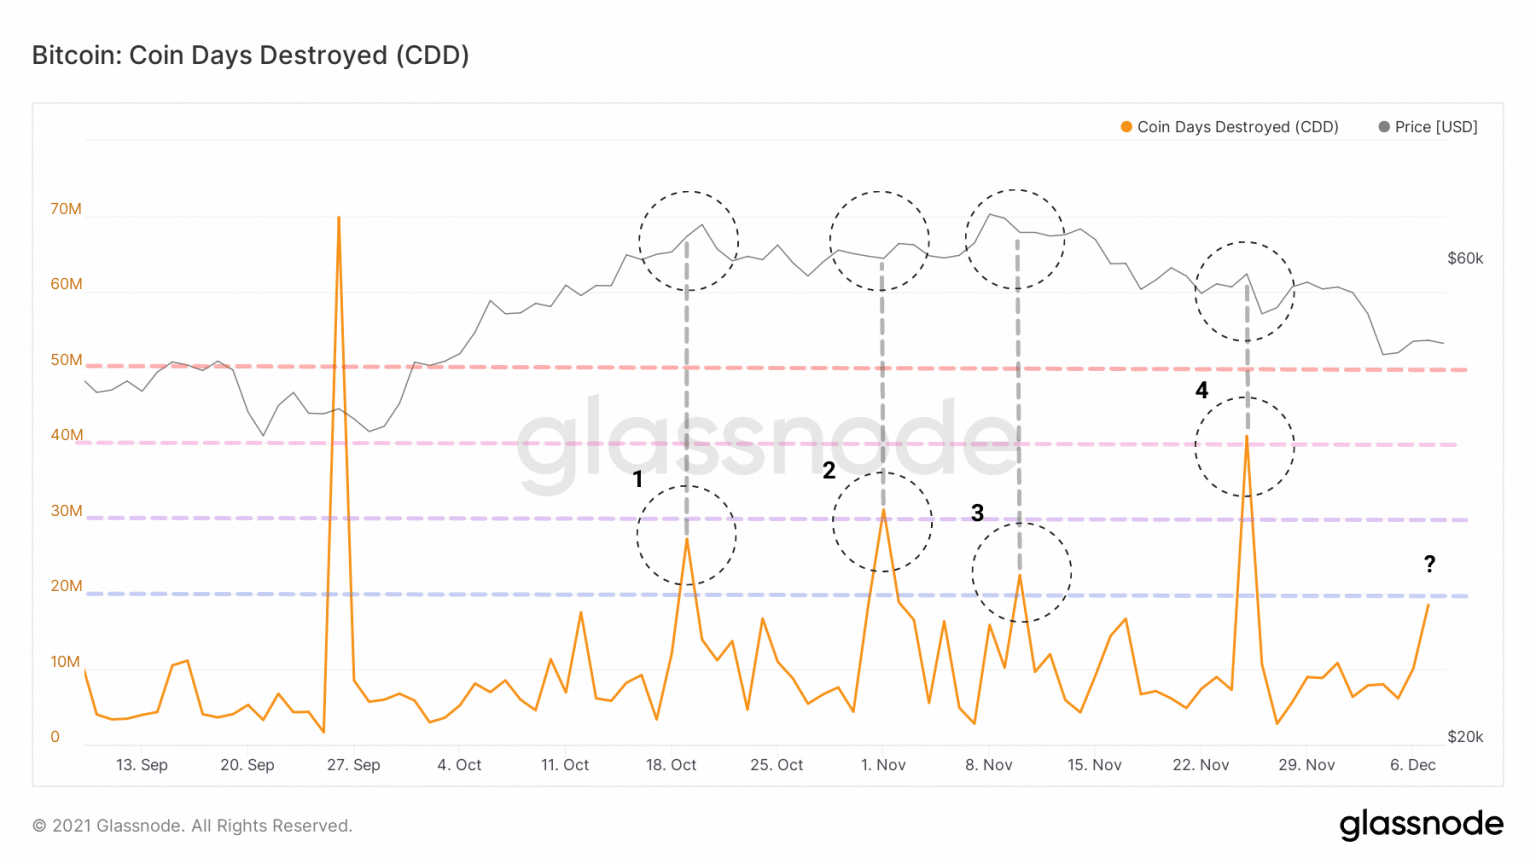 Bitcoin (BTC) CDD Chart (Source: Glassnode)